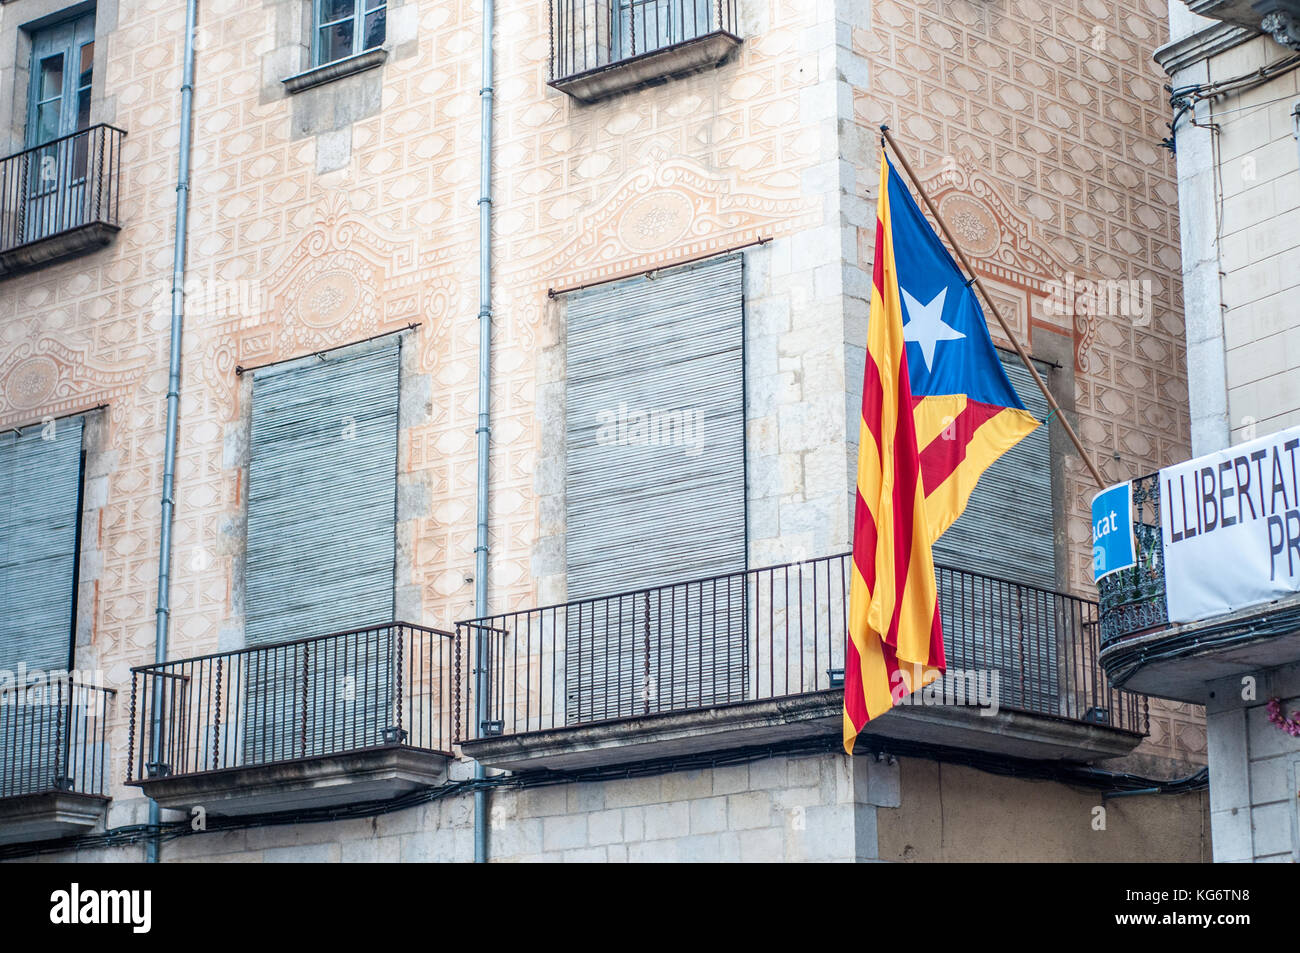 Drapeau catalan indépendant, estelada, sur une façade, Gérone, Cataloinia Banque D'Images